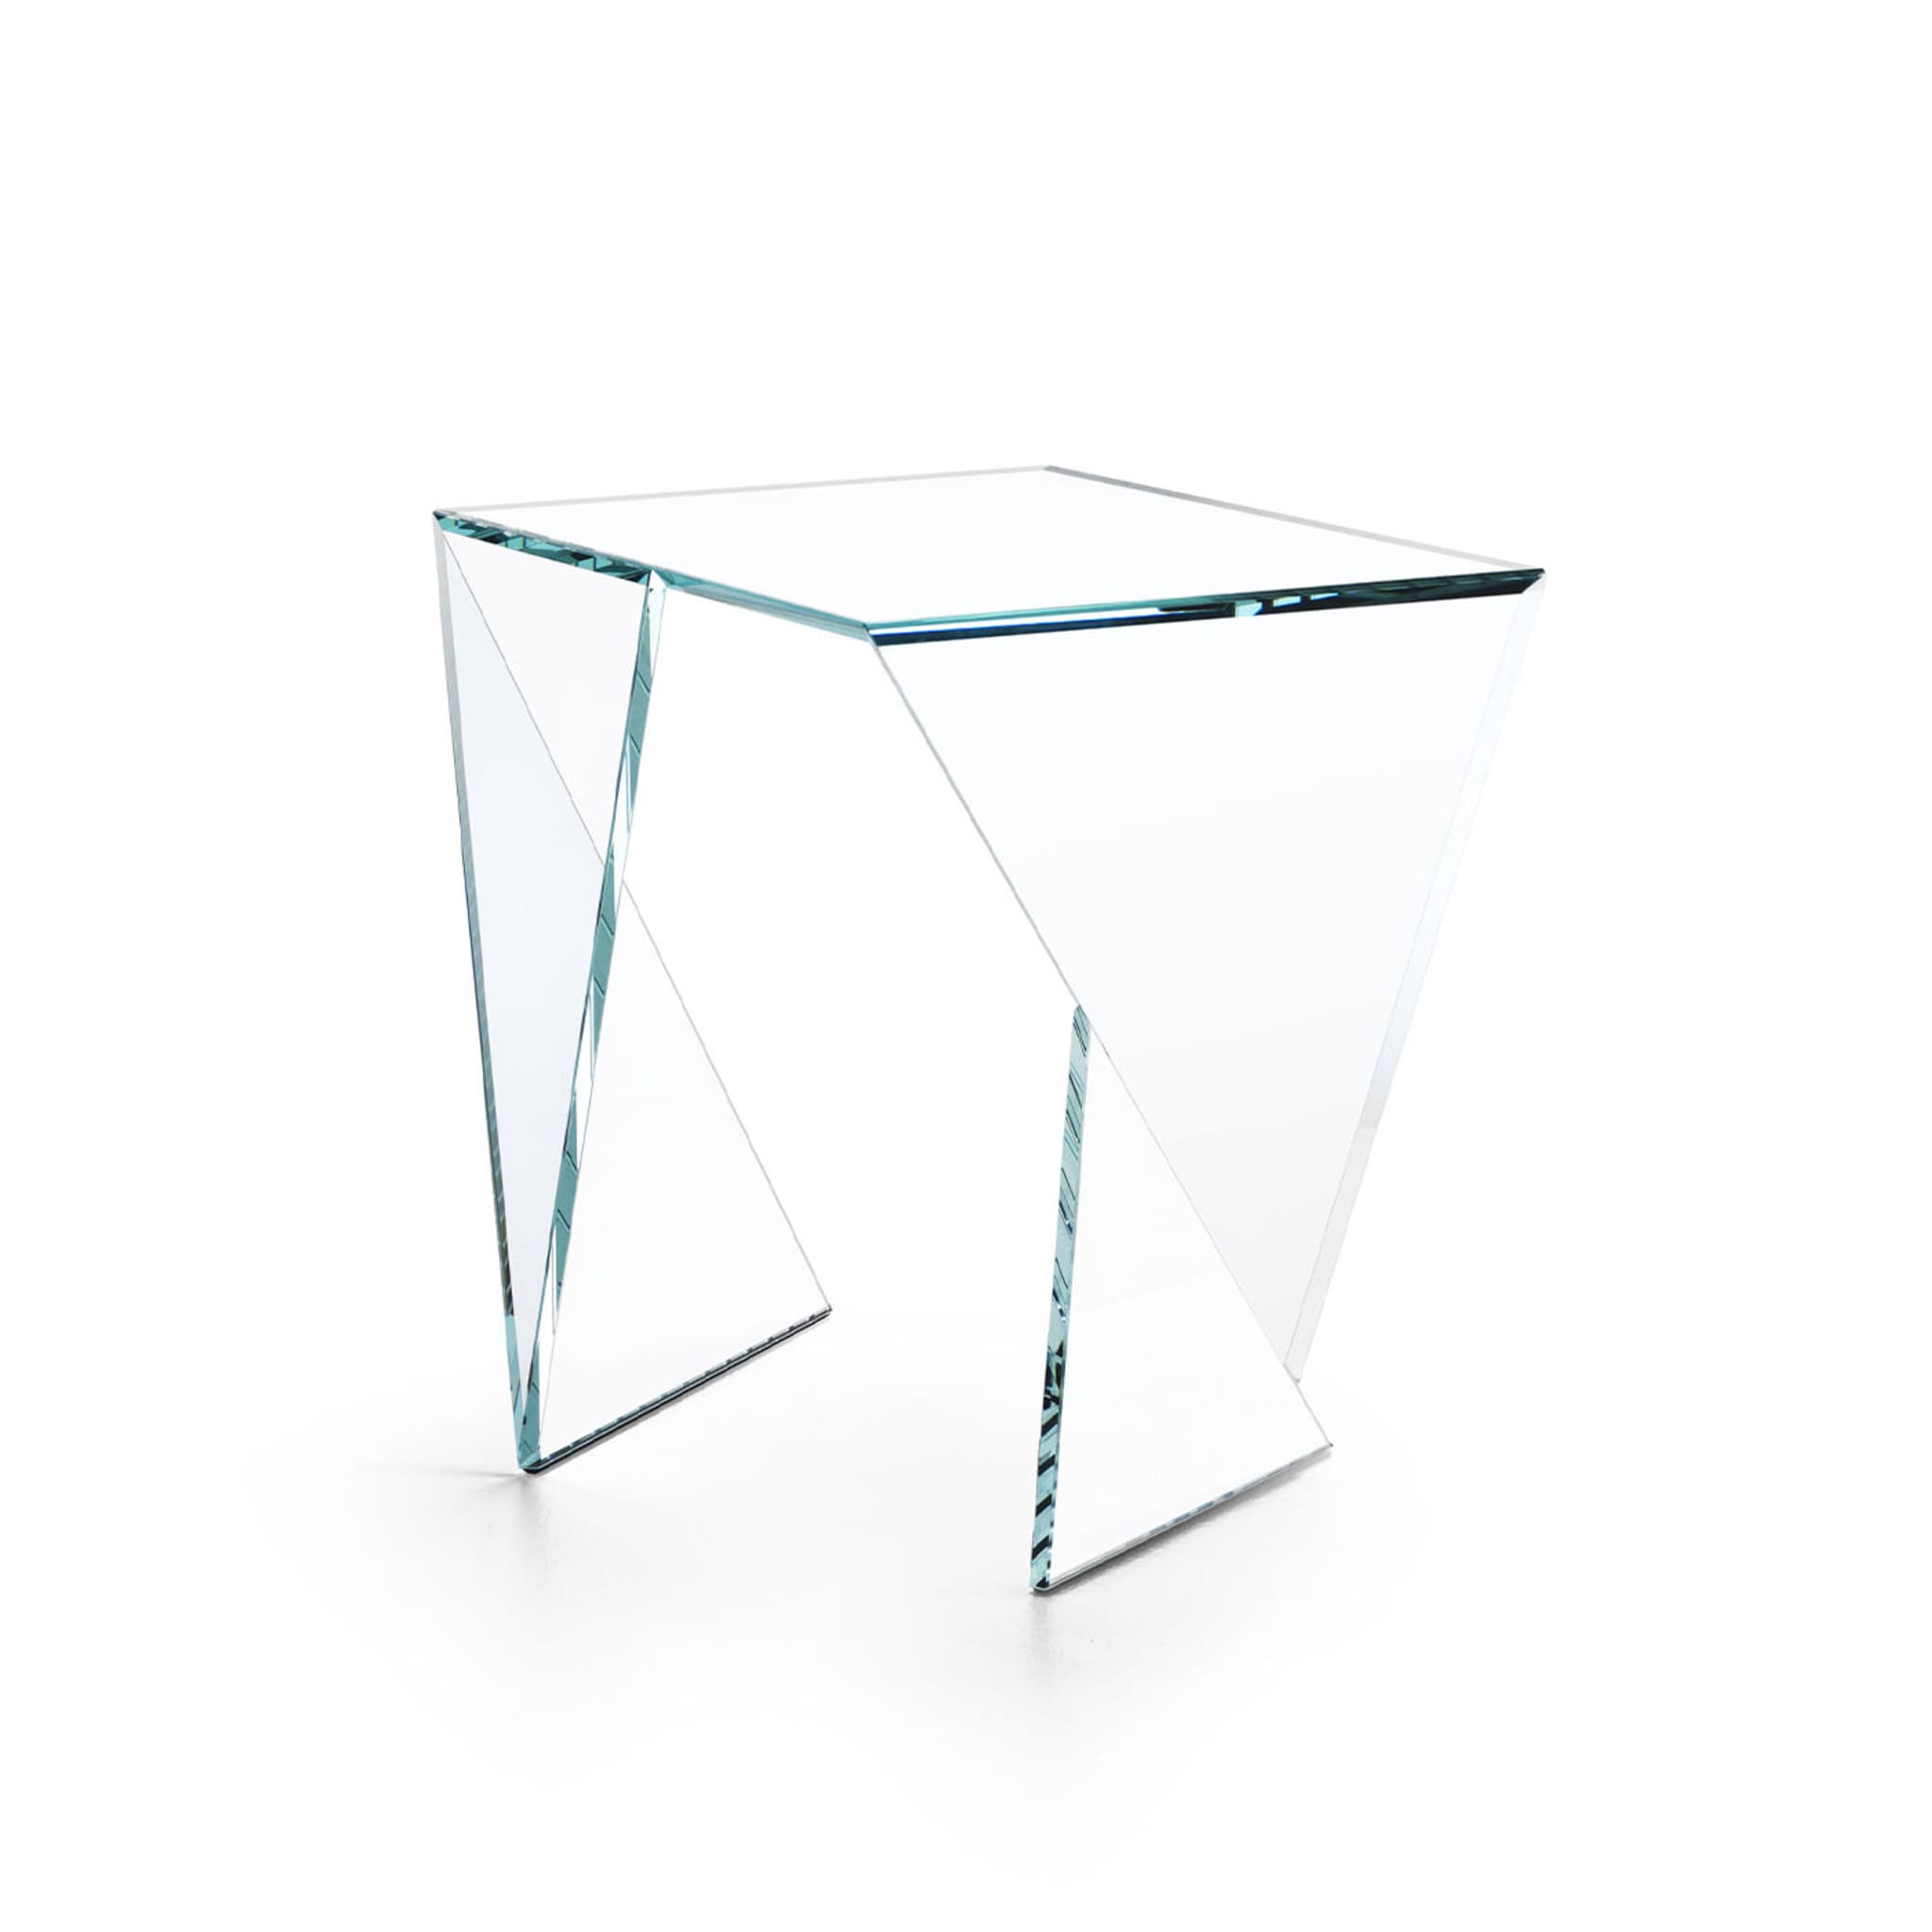 Origami Calcio Side Table - Alternative view 1